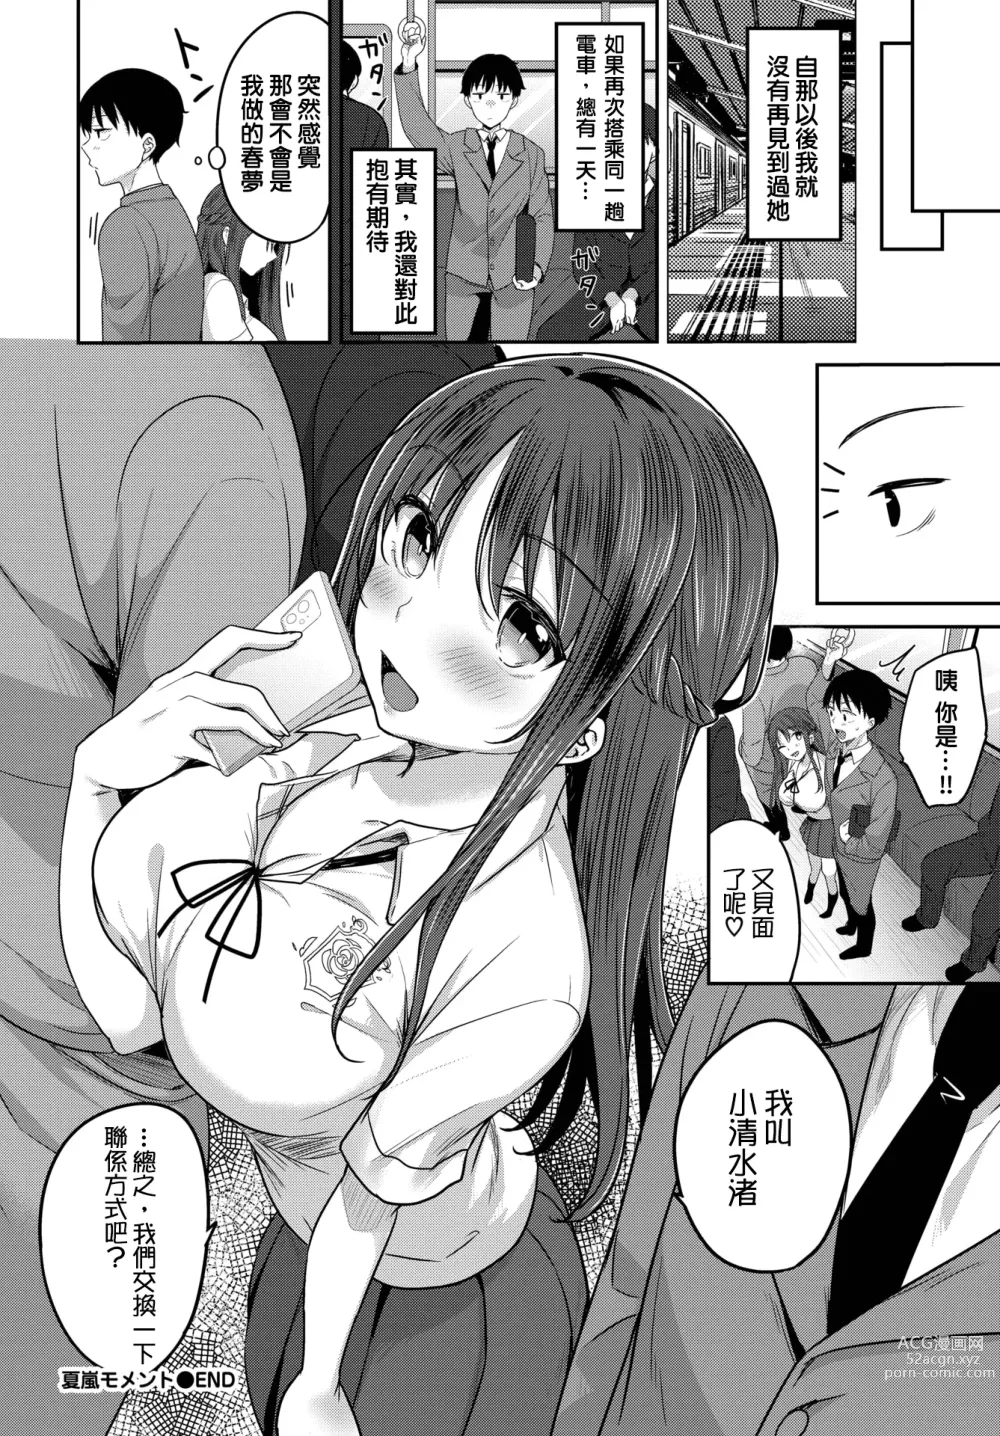 Page 20 of manga Natsu Arashi Moment